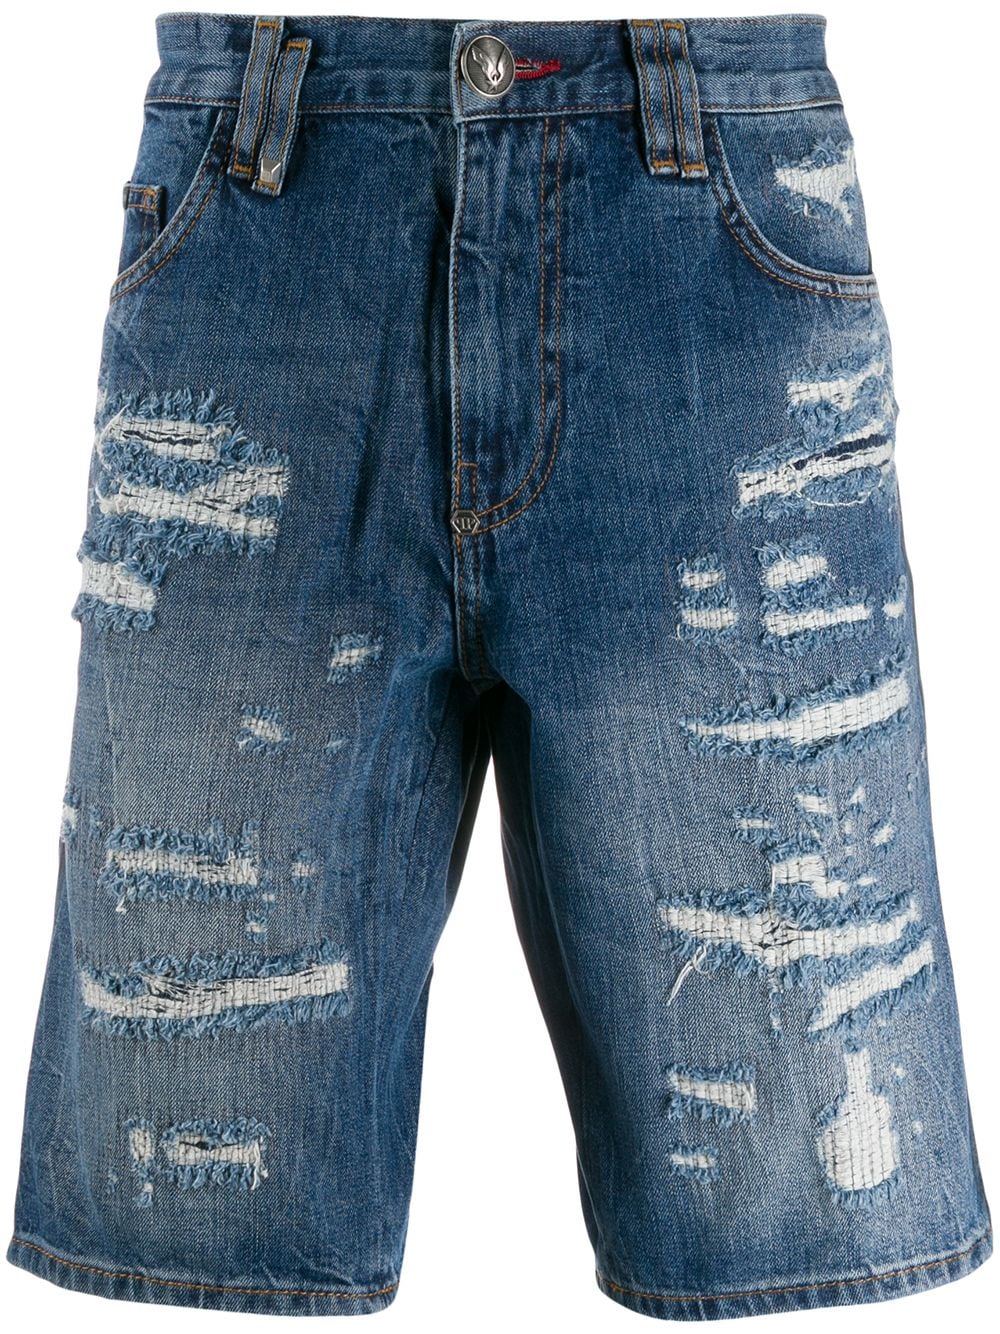 фото Philipp plein джинсовые шорты с эффектом потертости